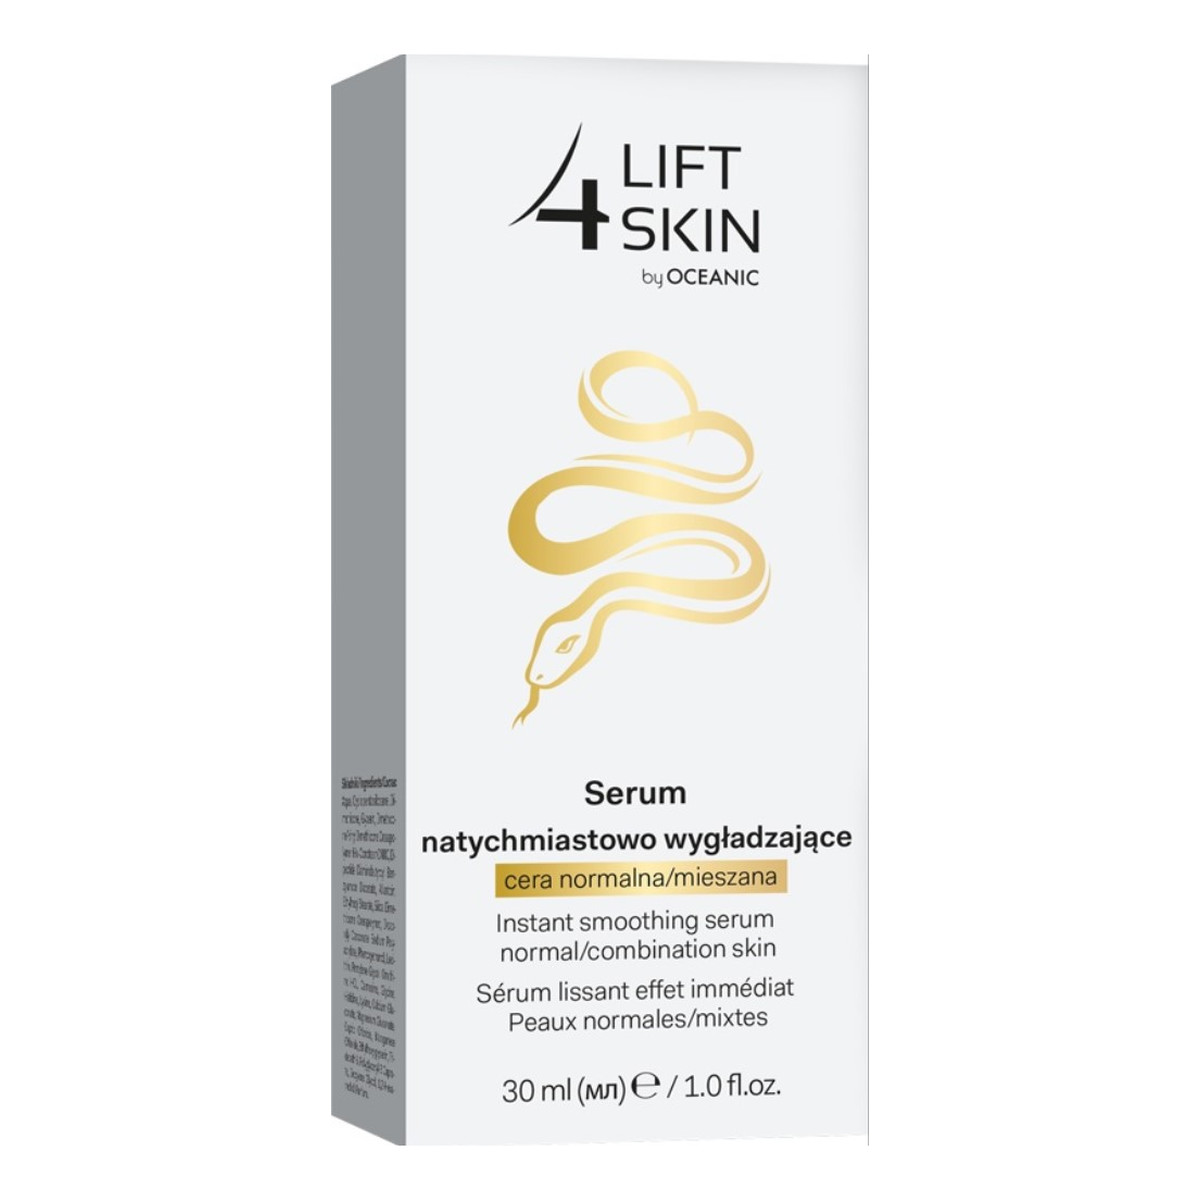 Lift 4 Skin Serum natychmiastowo wygładzające - cera normalna i mieszana 30ml